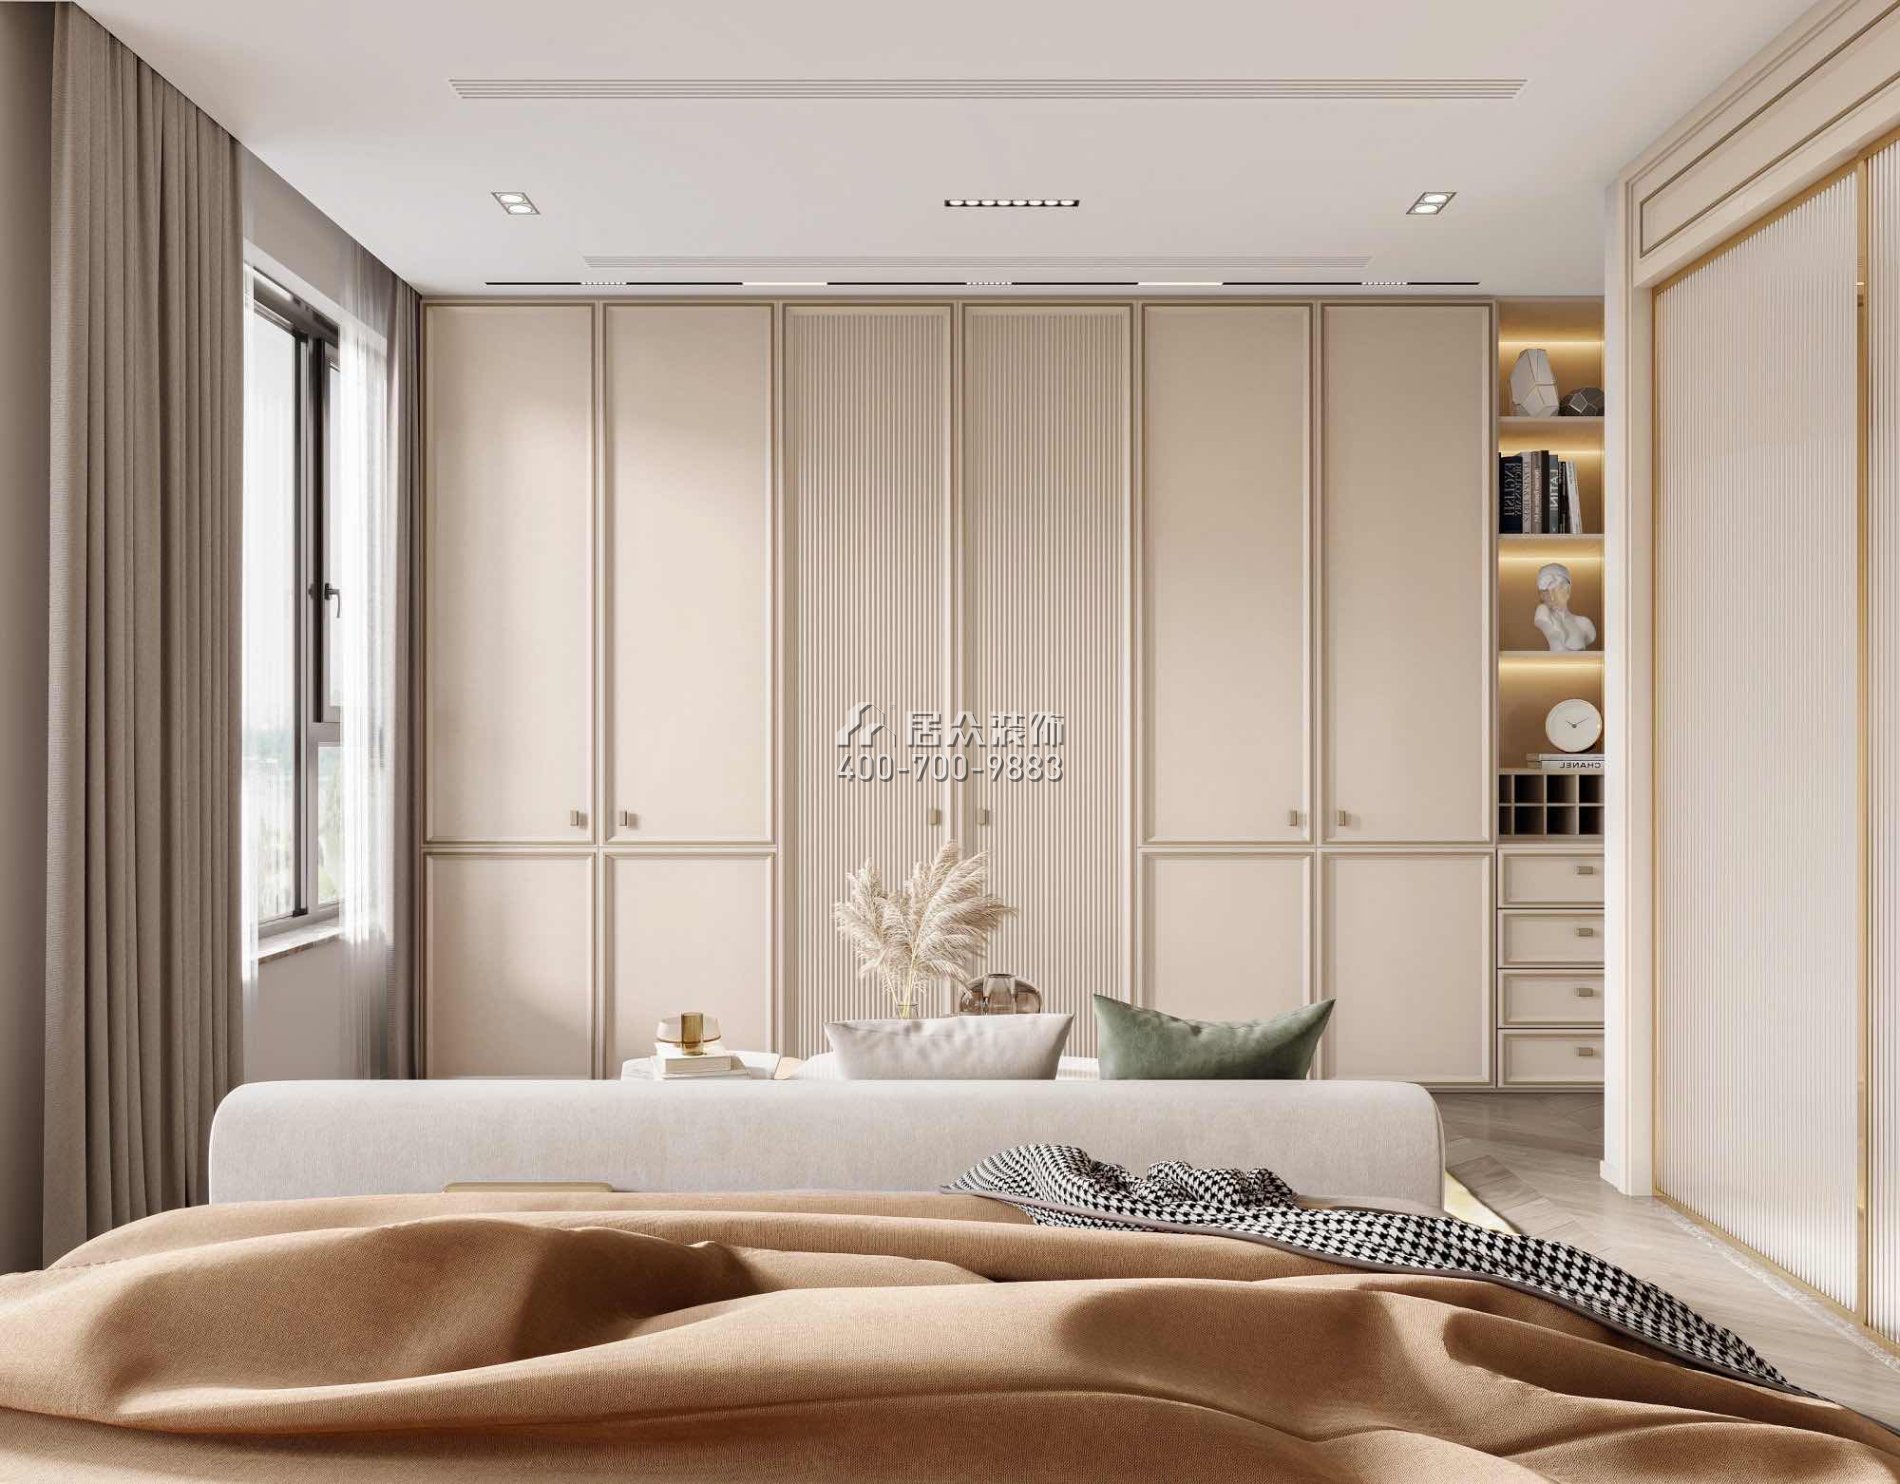 恒裕水墨兰亭360平方米中式风格复式户型卧室装修效果图